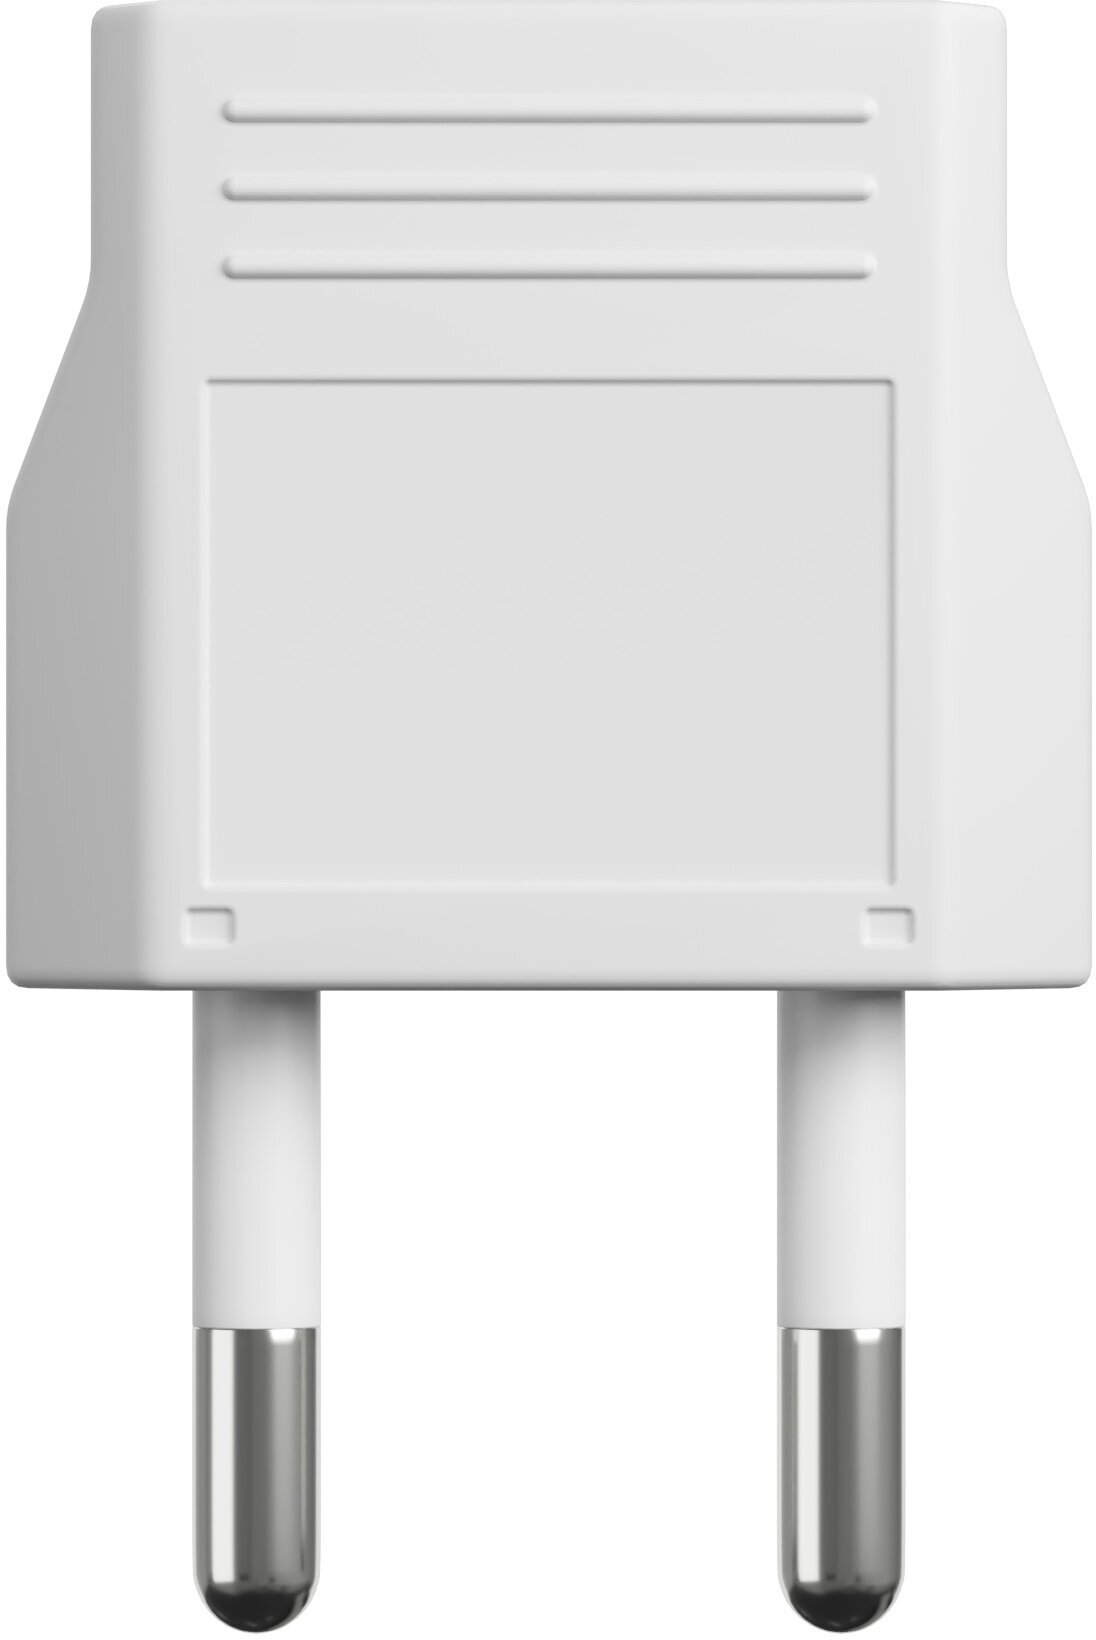 Адаптер сетевой на евровилку, евро розетку GSMIN Travel Adapter A8 переходник для американской, китайской вилки US/CN (250 В, 6А), 2шт. (Белый) - фотография № 4